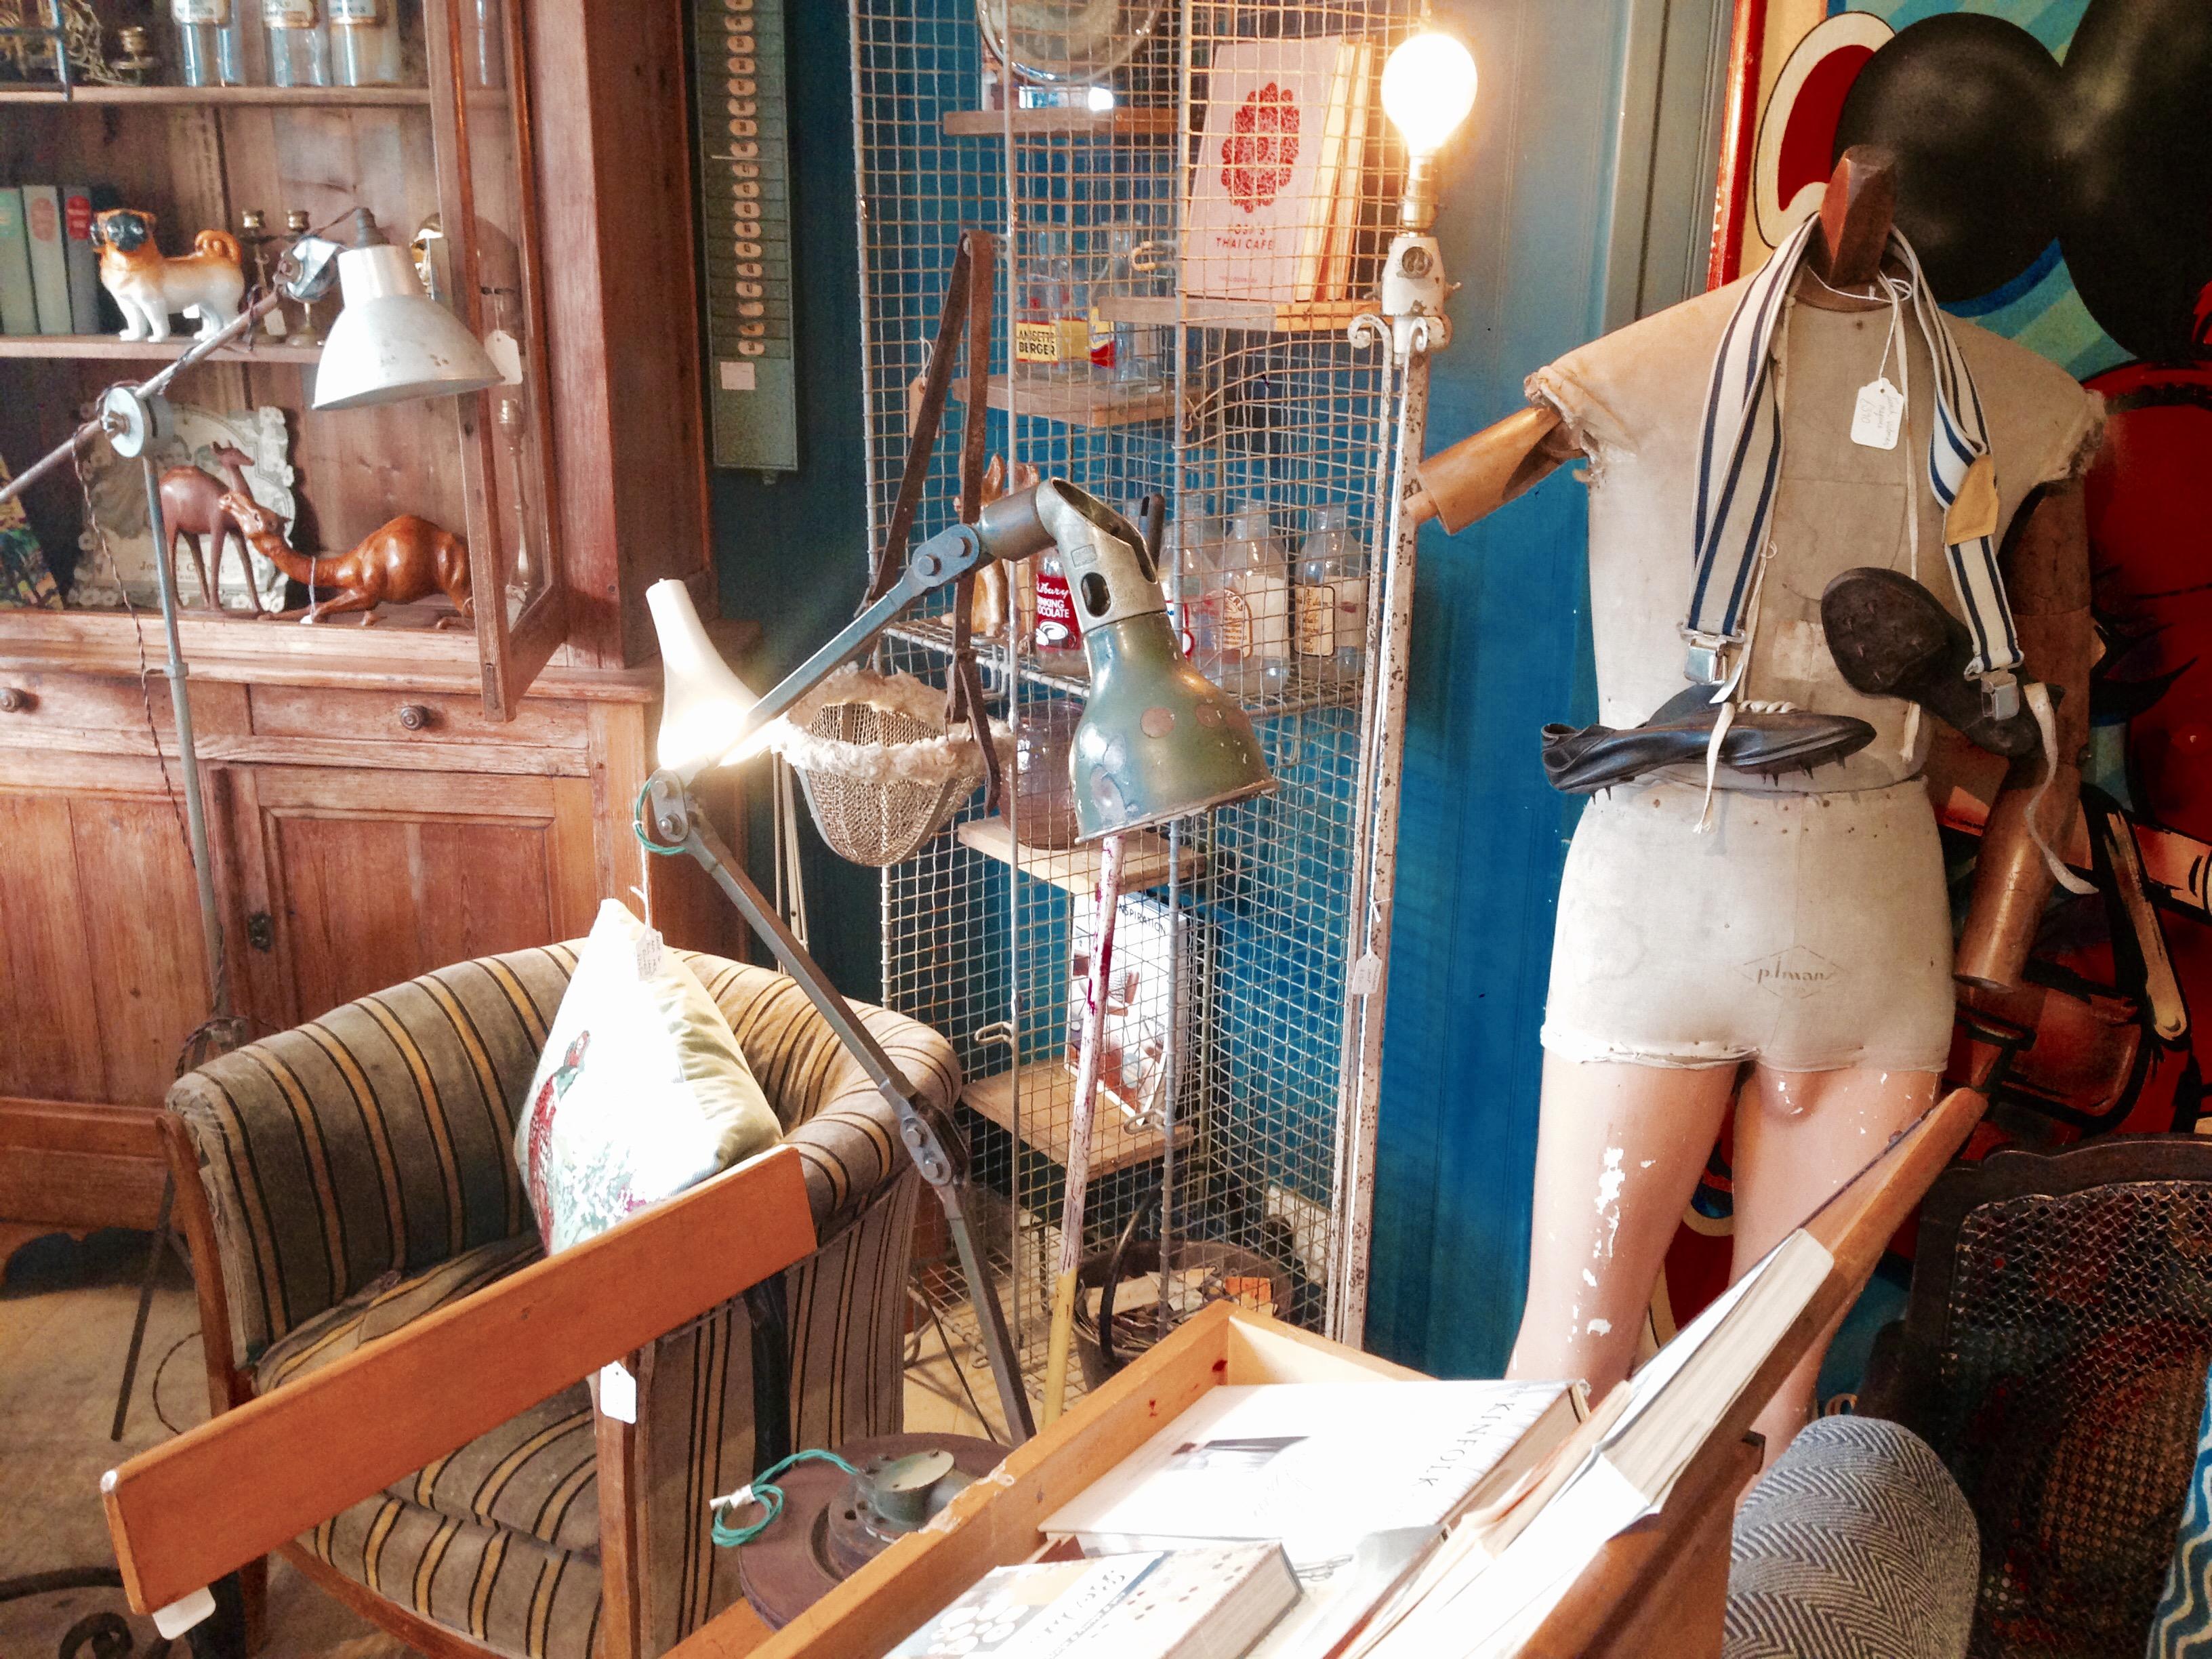 Dieser Shop war für allerhand Überraschungen gut! #falmouth #merill's #vintage #antiques